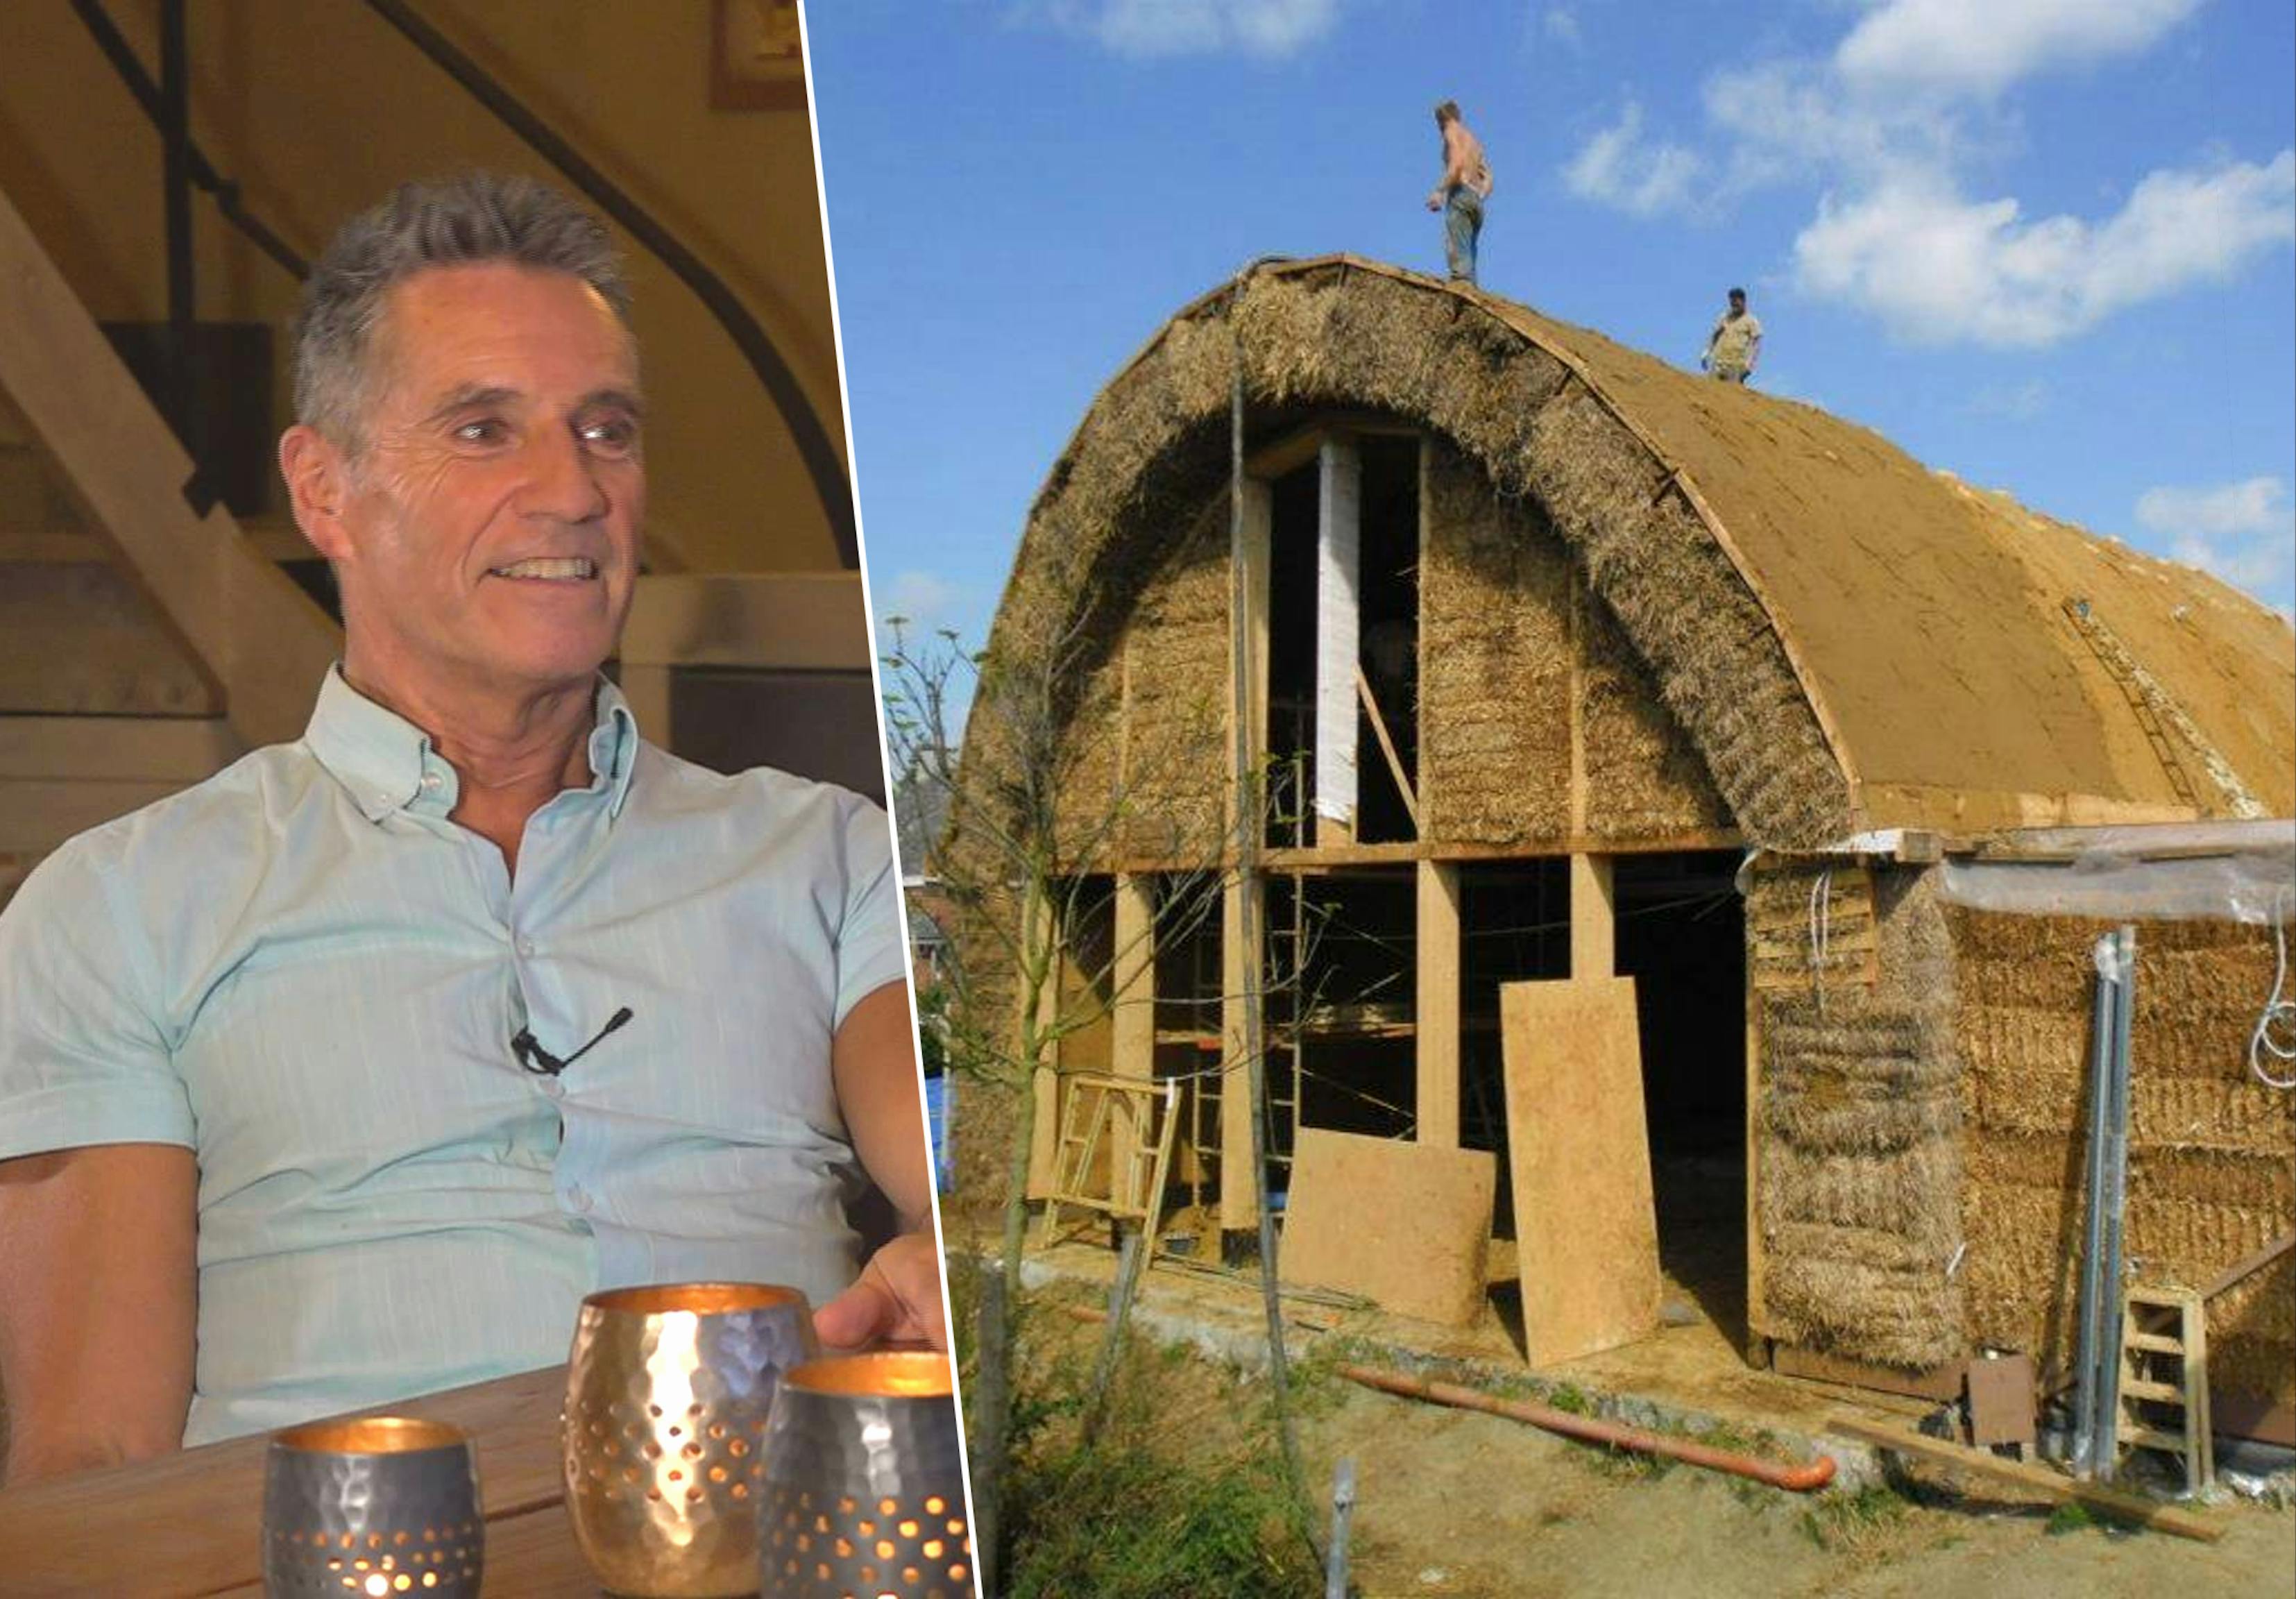 Reductor verdund Score Matthias bouwde huis van stro: "Voel de energiecrisis niet"